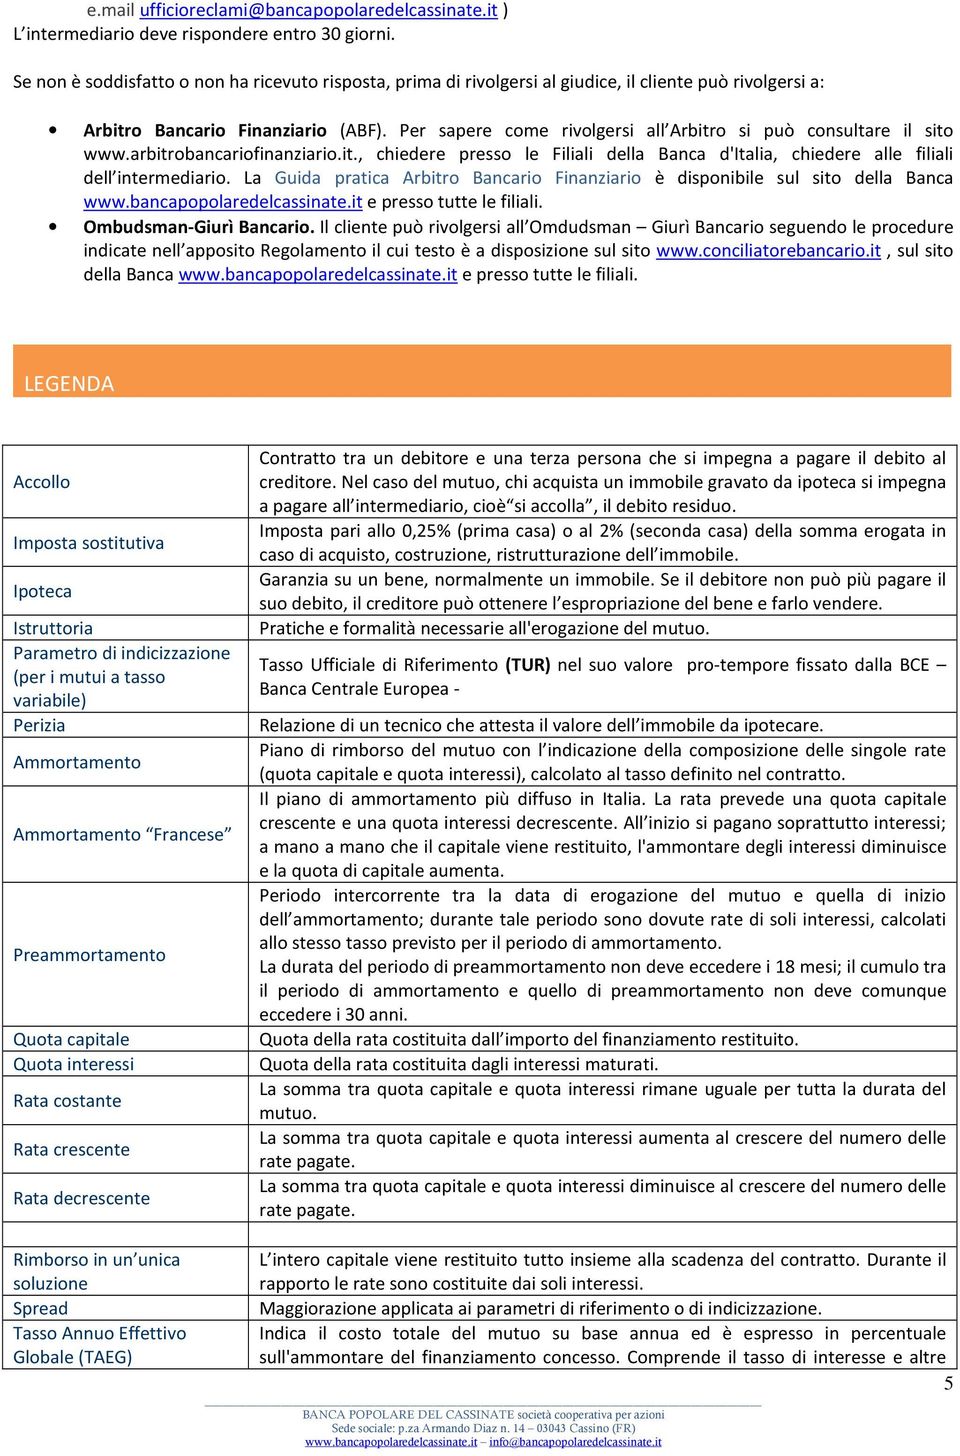 Per sapere come rivolgersi all Arbitro si può consultare il sito www.arbitrobancariofinanziario.it., chiedere presso le Filiali della Banca d'italia, chiedere alle filiali dell intermediario.